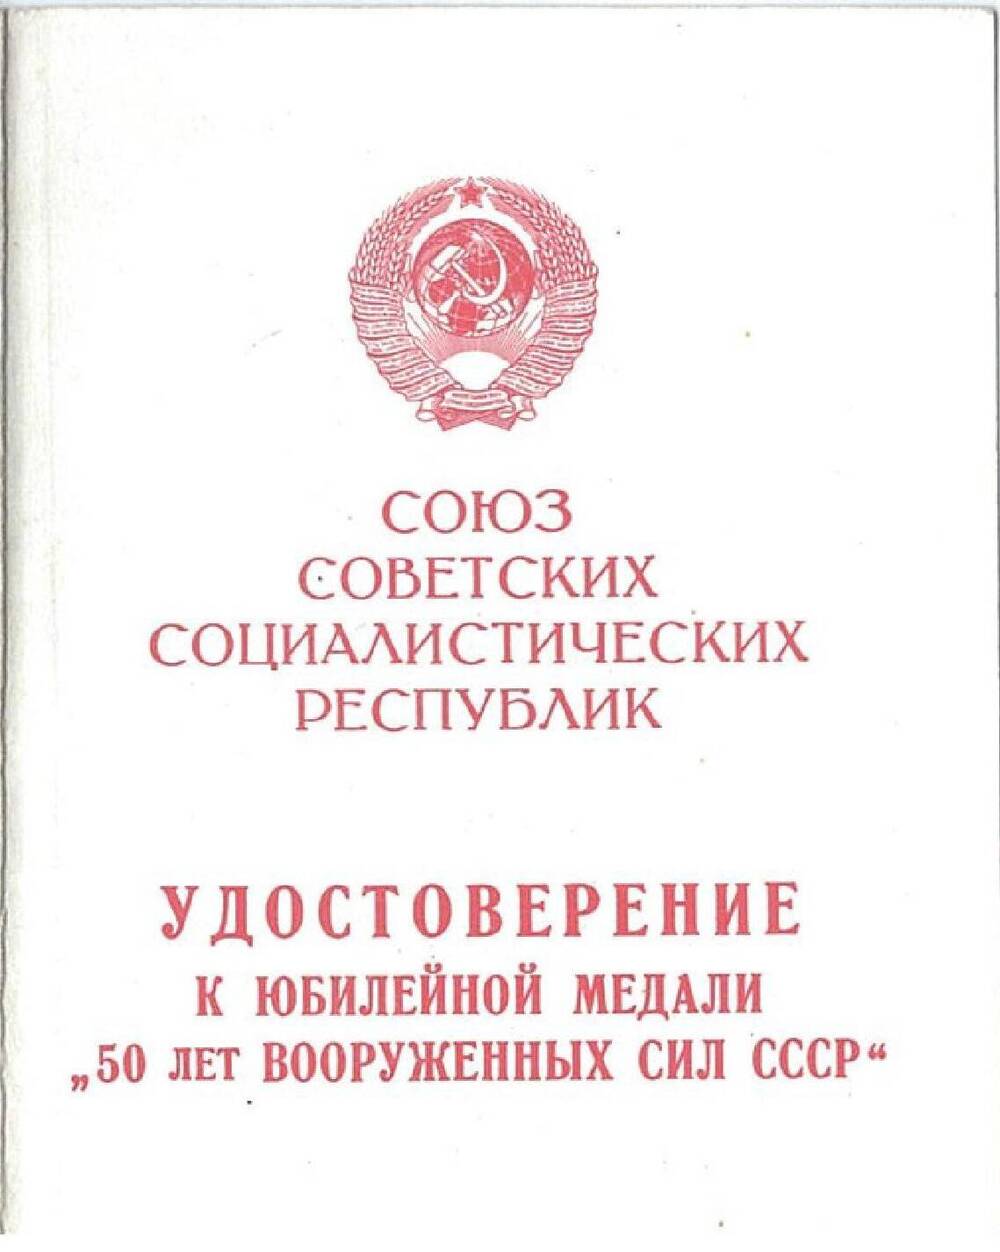 Удостоверение к юбилейной медали 50 лет Вооруженных сил СССР  Лебедева Николая Павловича. 1970 год